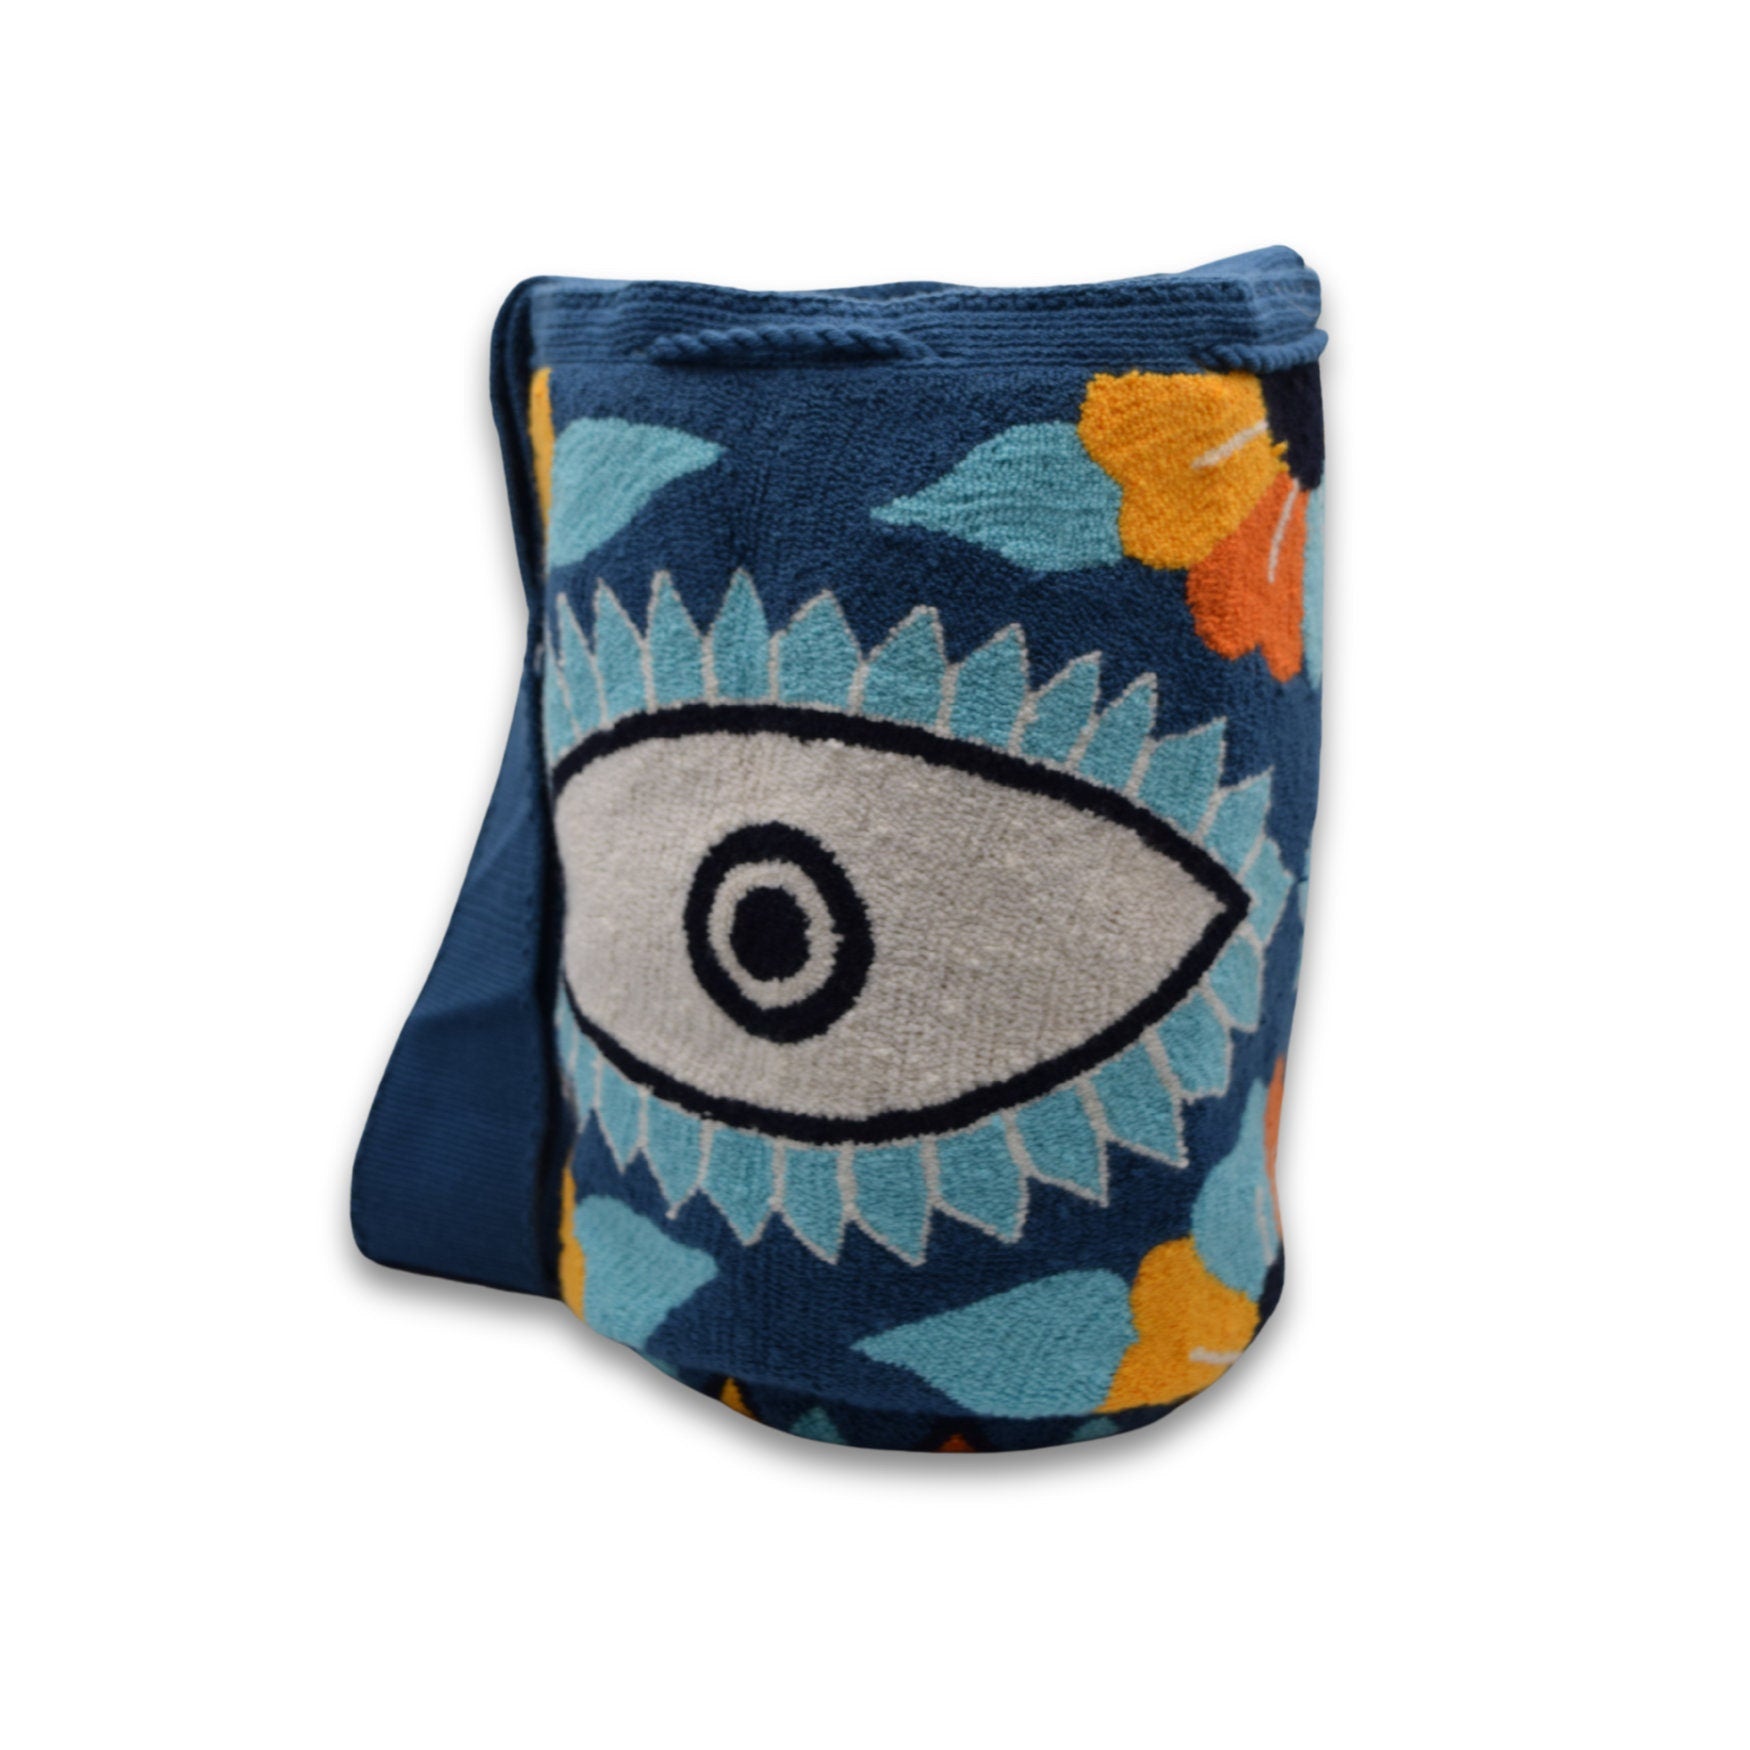 Wayuu Mochila Bag | Large Tapizada | Handmade in Colombia | Blue Blue Evil Lucky Awaken Eye Flowers